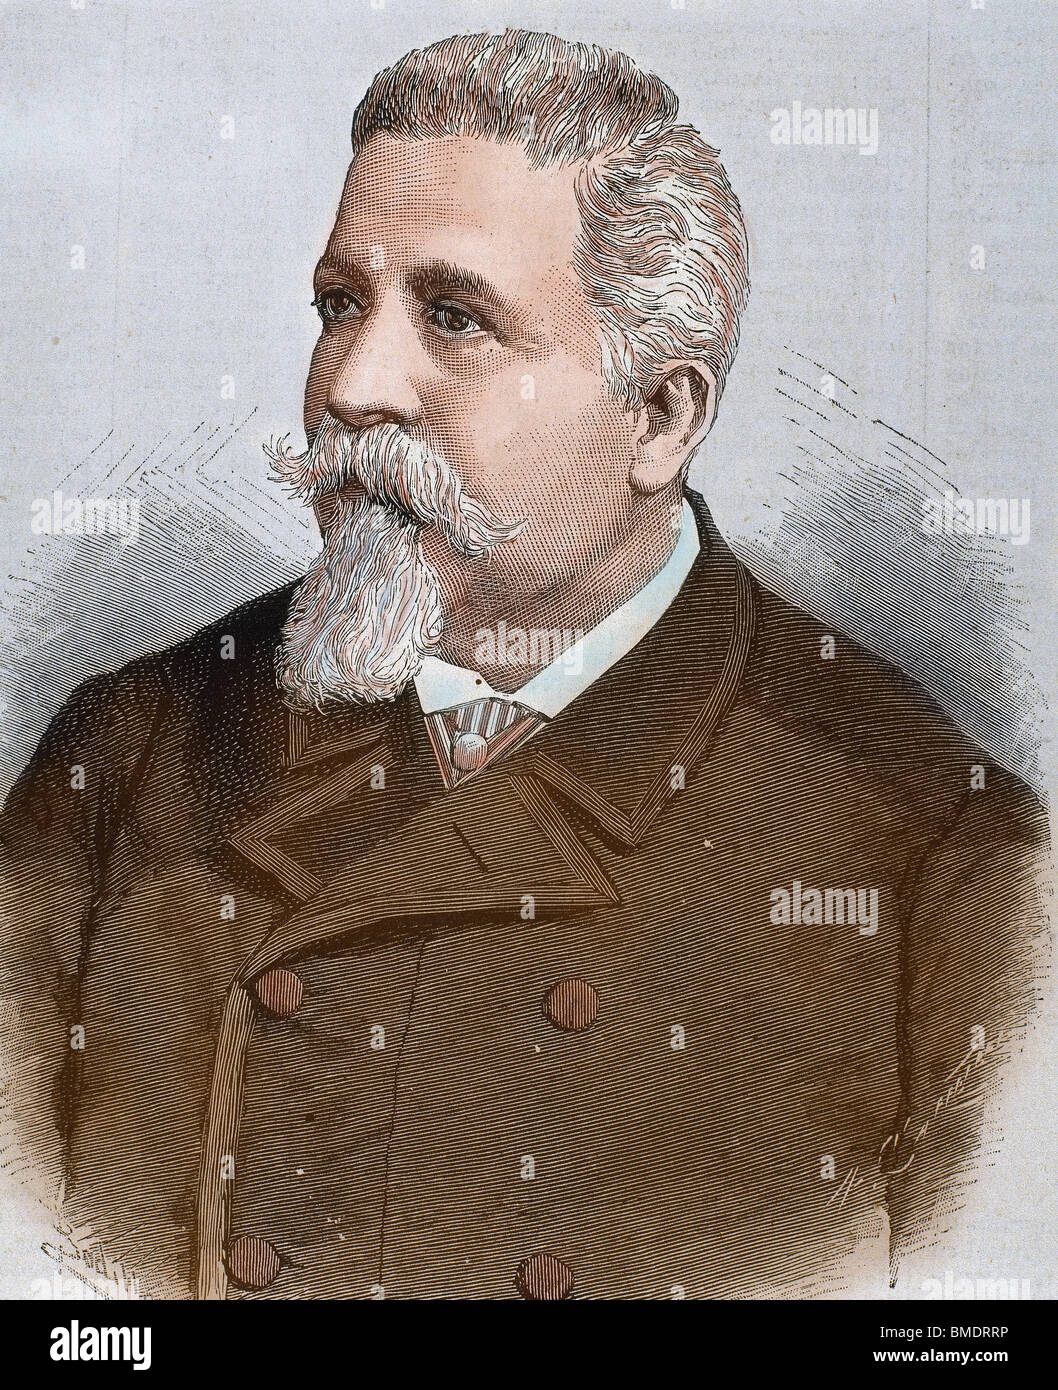 CAIROLI, Benedetto (Pavia, 1825, Capodimonte, 1889). Italian politician. Engraving by Carretero. Coloured. Stock Photo